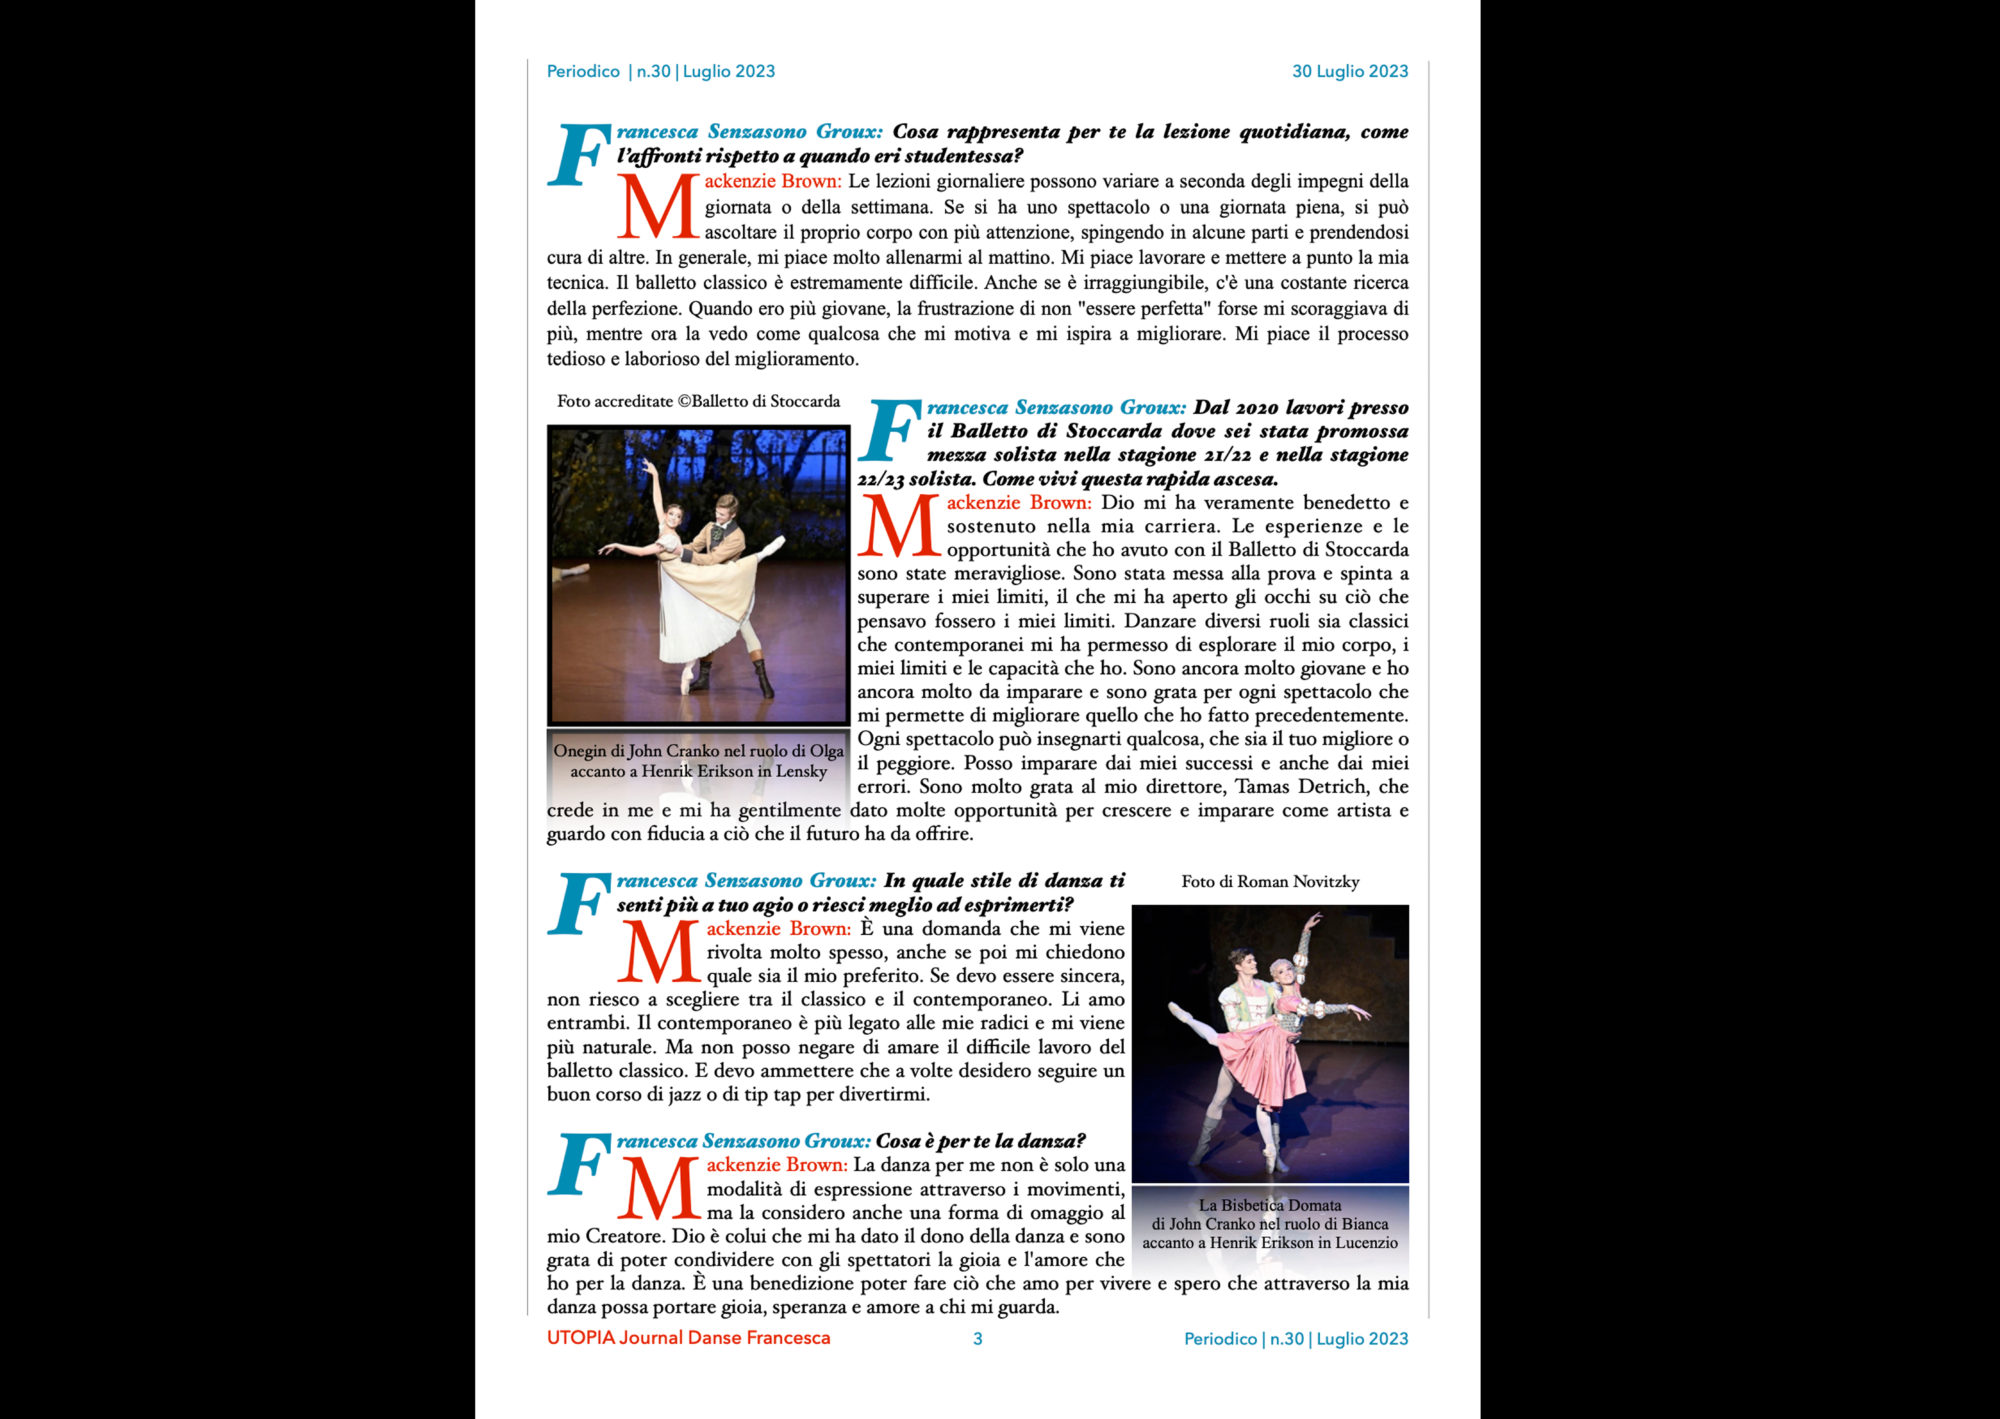 ©UTOPIA Journal Danse Francesca Periodico n.30 30 Luglio 2023 pagina 3